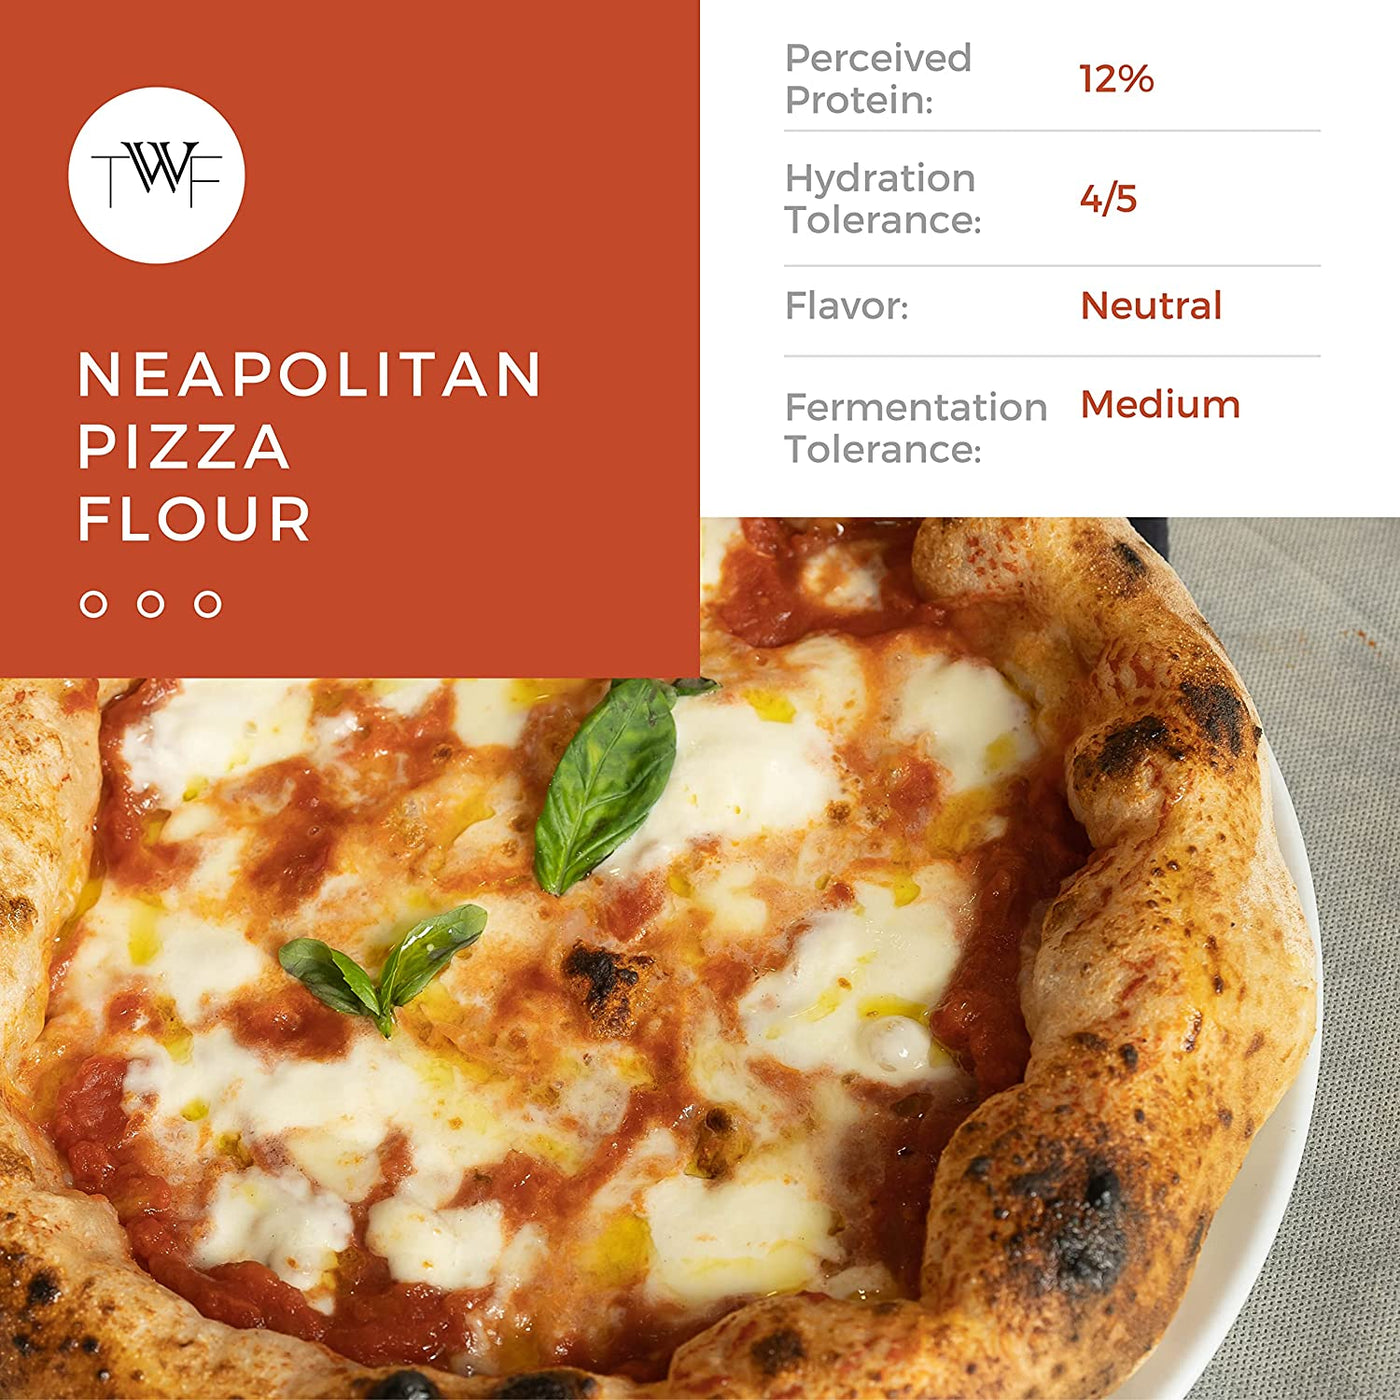 TWF Neapolitan Pizza Flour